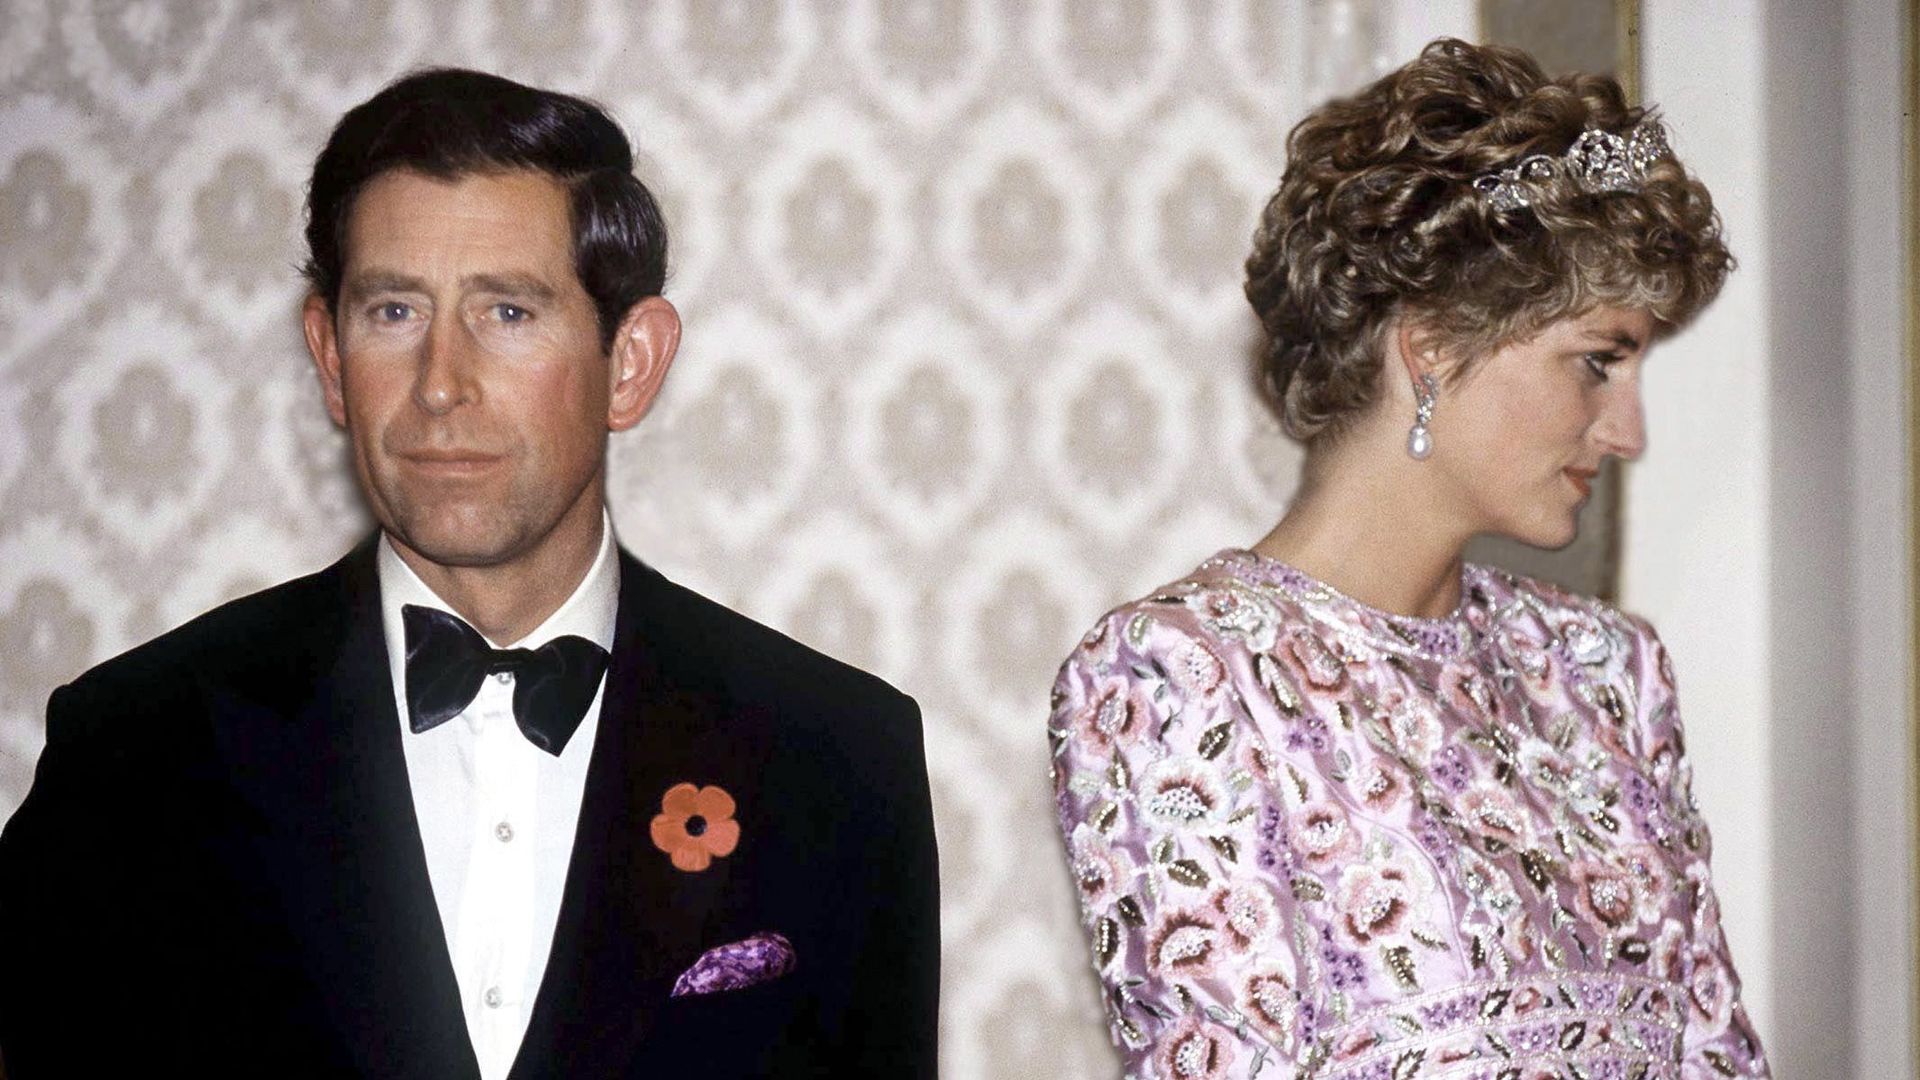 Le Prince Charles et la Princesse Diana lors de leur dernier voyage officiel ensemble – une visite en République de Corée (Corée du Sud). Ils assistent à un banquet présidentiel à la Maison Bleue à Séoul, le 3 novembre 1992.